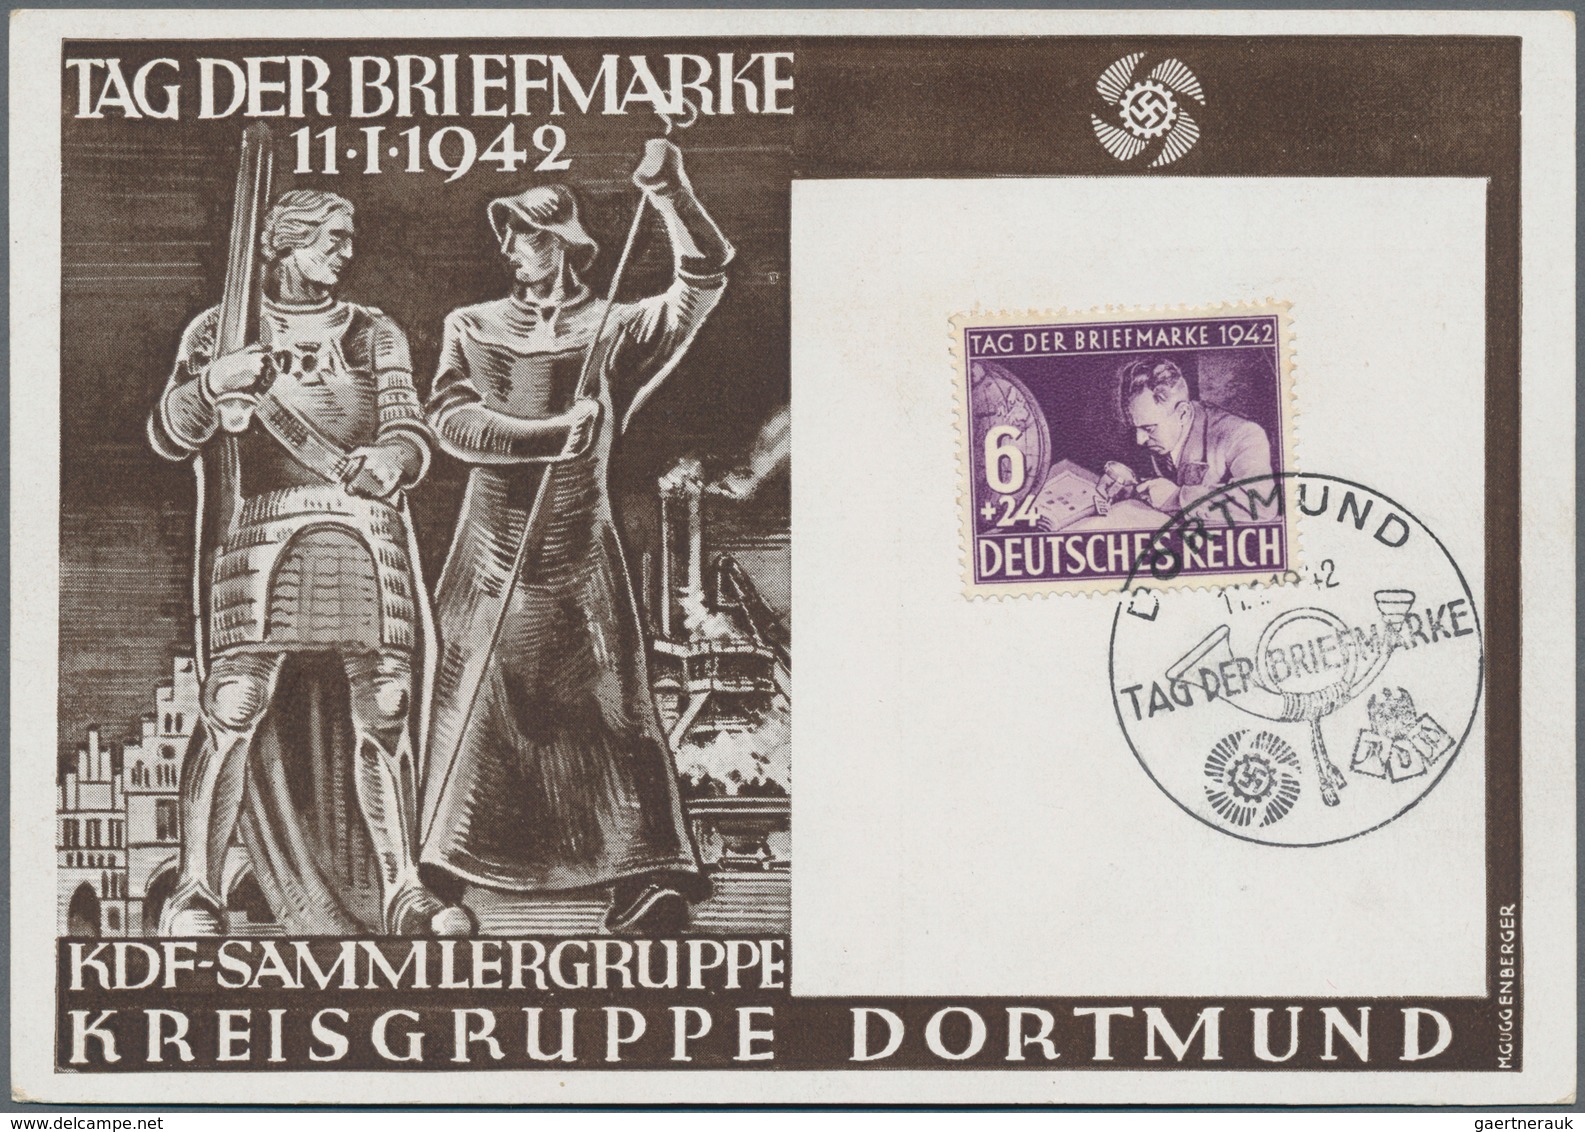 Deutsches Reich - 3. Reich: 1933/1945, umfangreiche, vorsortierte Sammlung Marken und Belege nach St